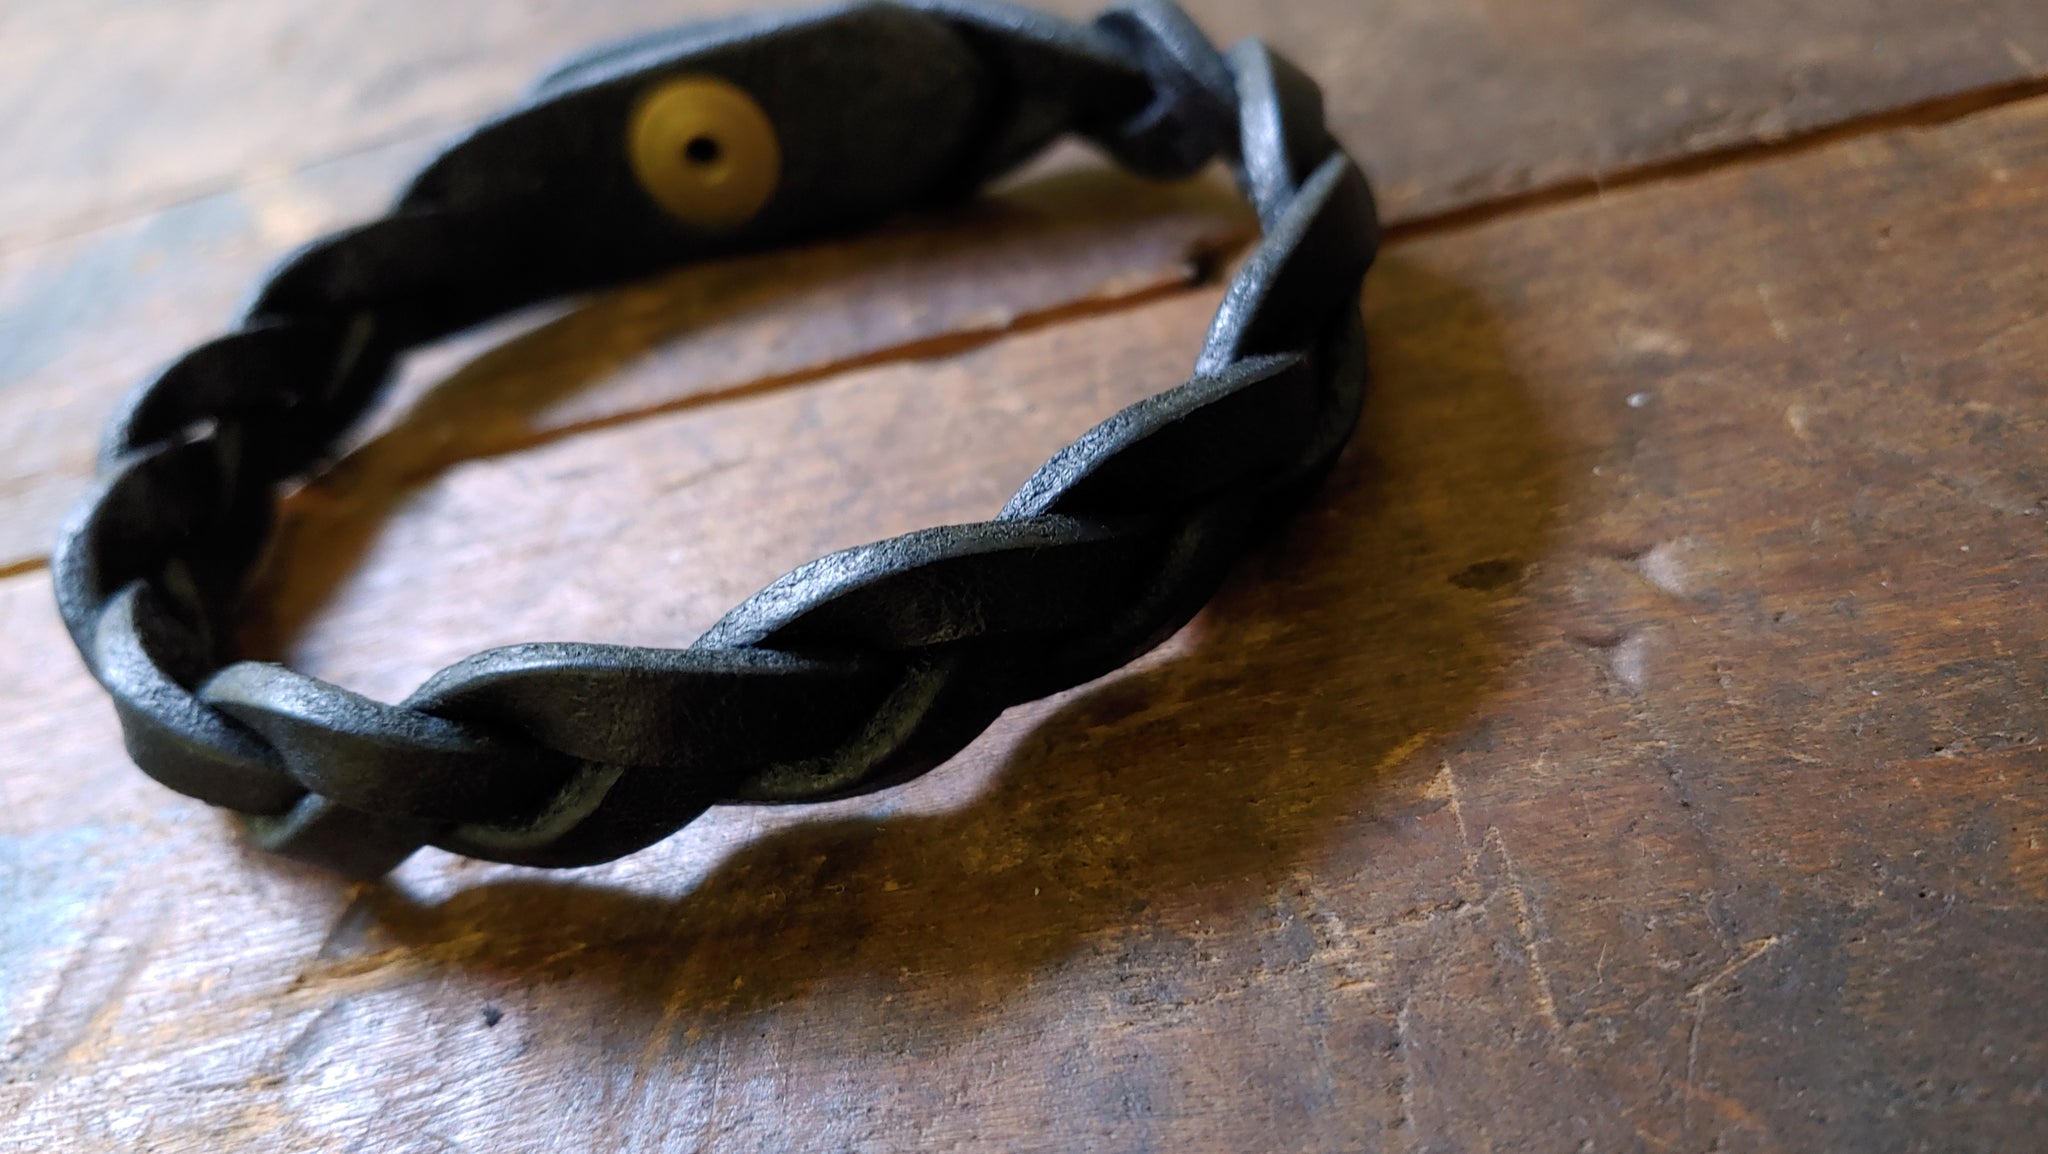 Bo Hand Braided Leather Mystery Bracelet - 9.0 WRIST SIZE - Trick Braid Bracelet, BLACK w/ Brass Snap